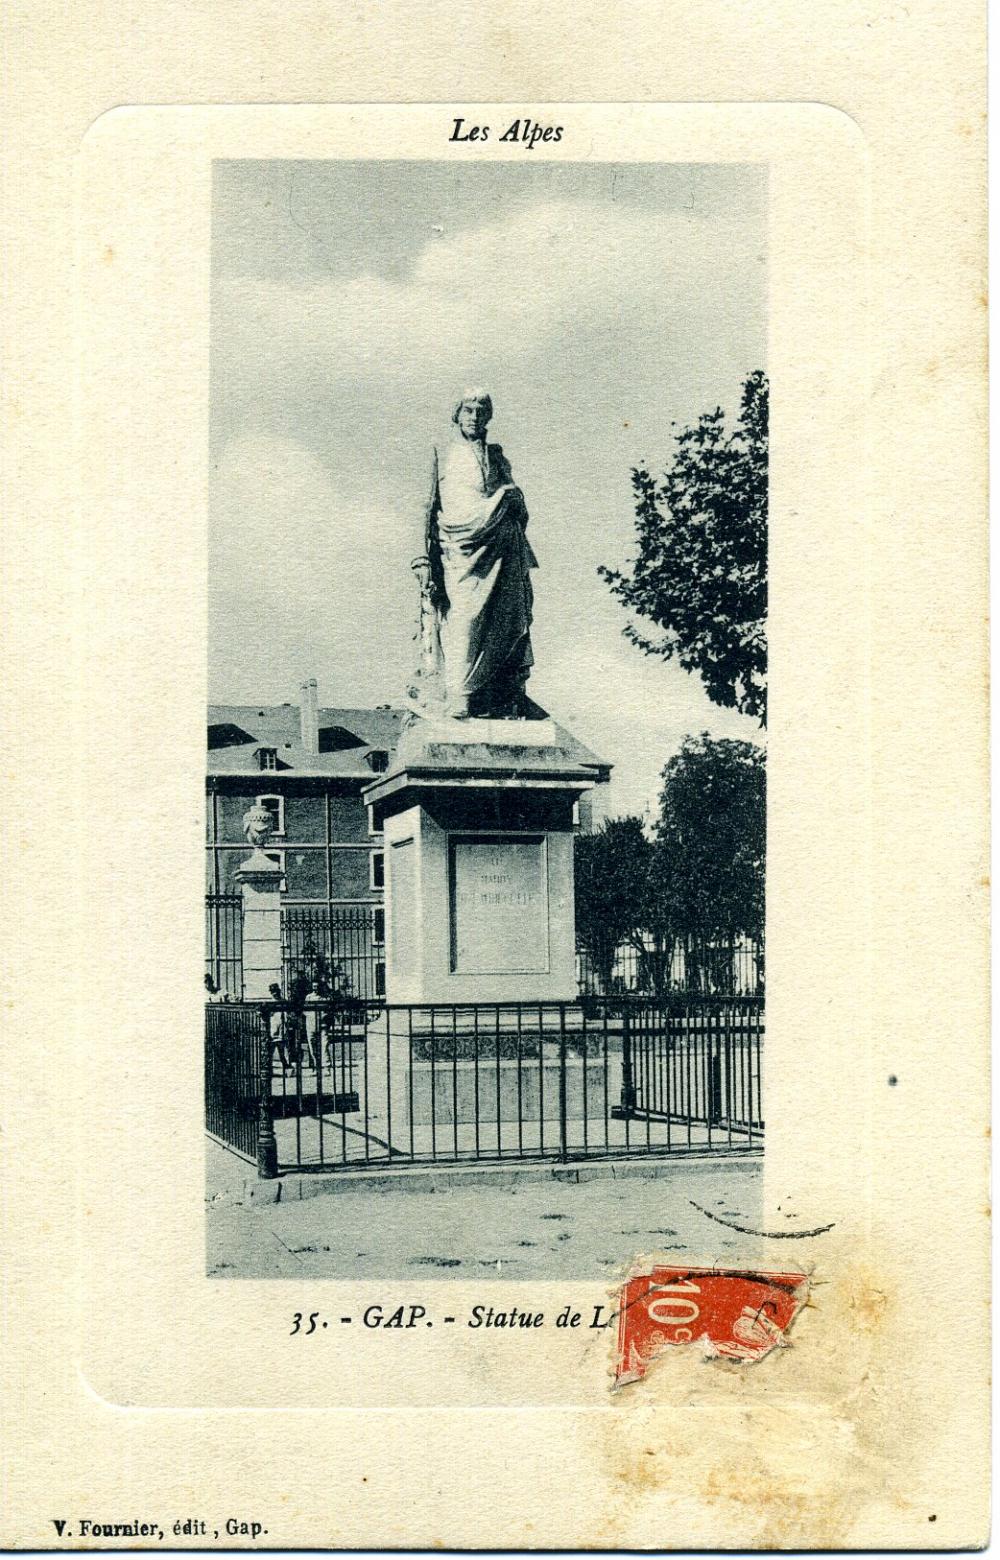 Gap - Statue de Ladoucette